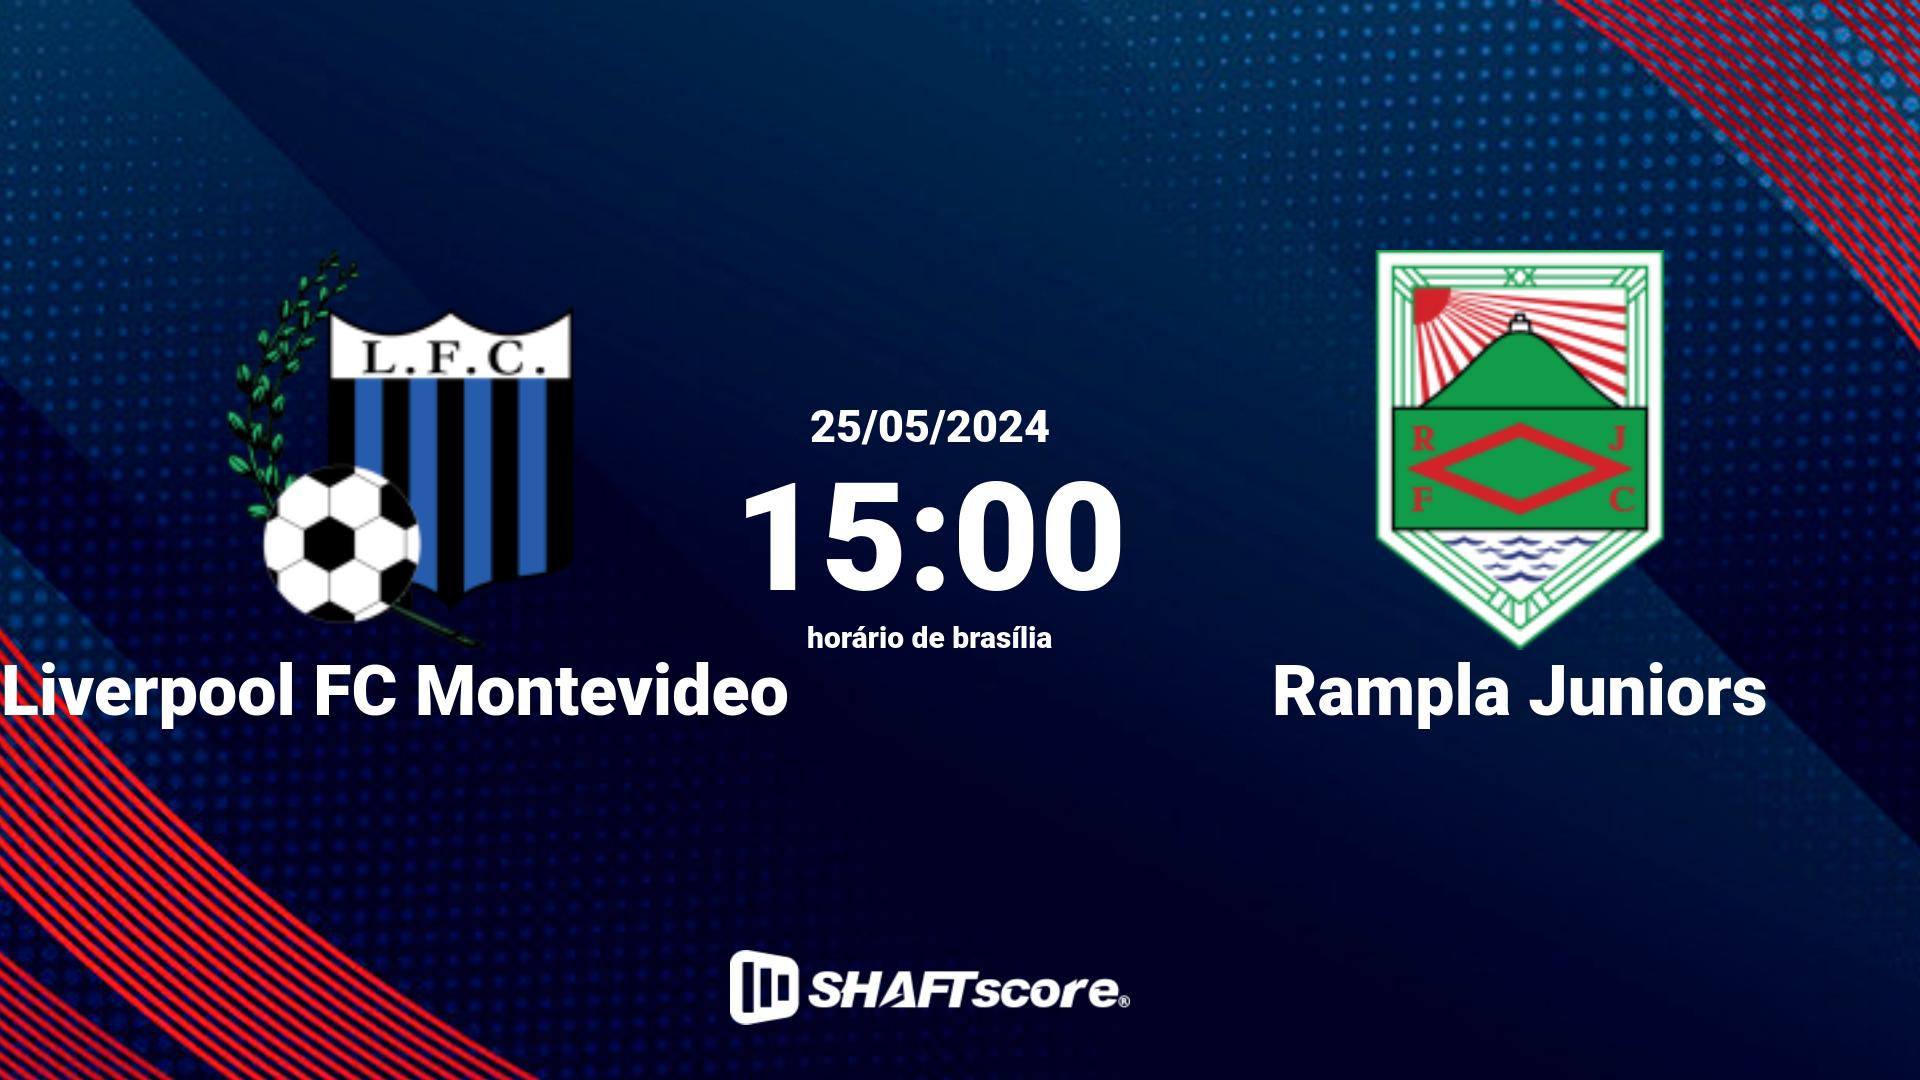 Estatísticas do jogo Liverpool FC Montevideo vs Rampla Juniors 25.05 15:00